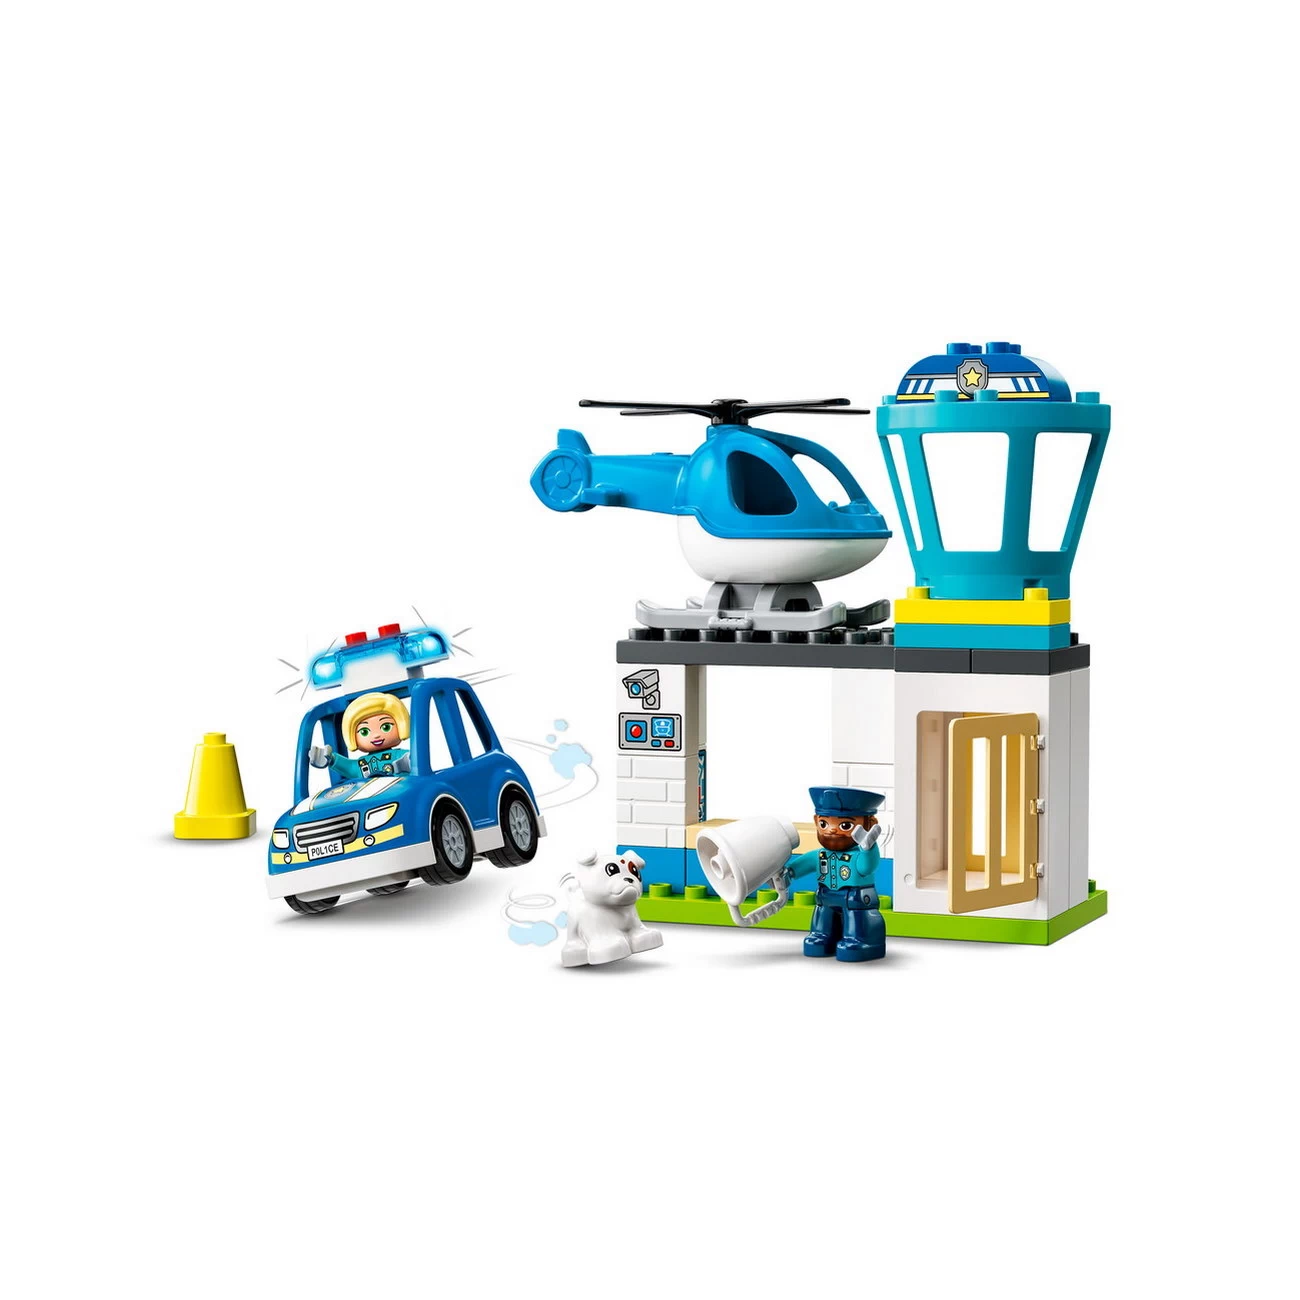 LEGO DUPLO 10959 - Polizeistation mit Hubschrauber